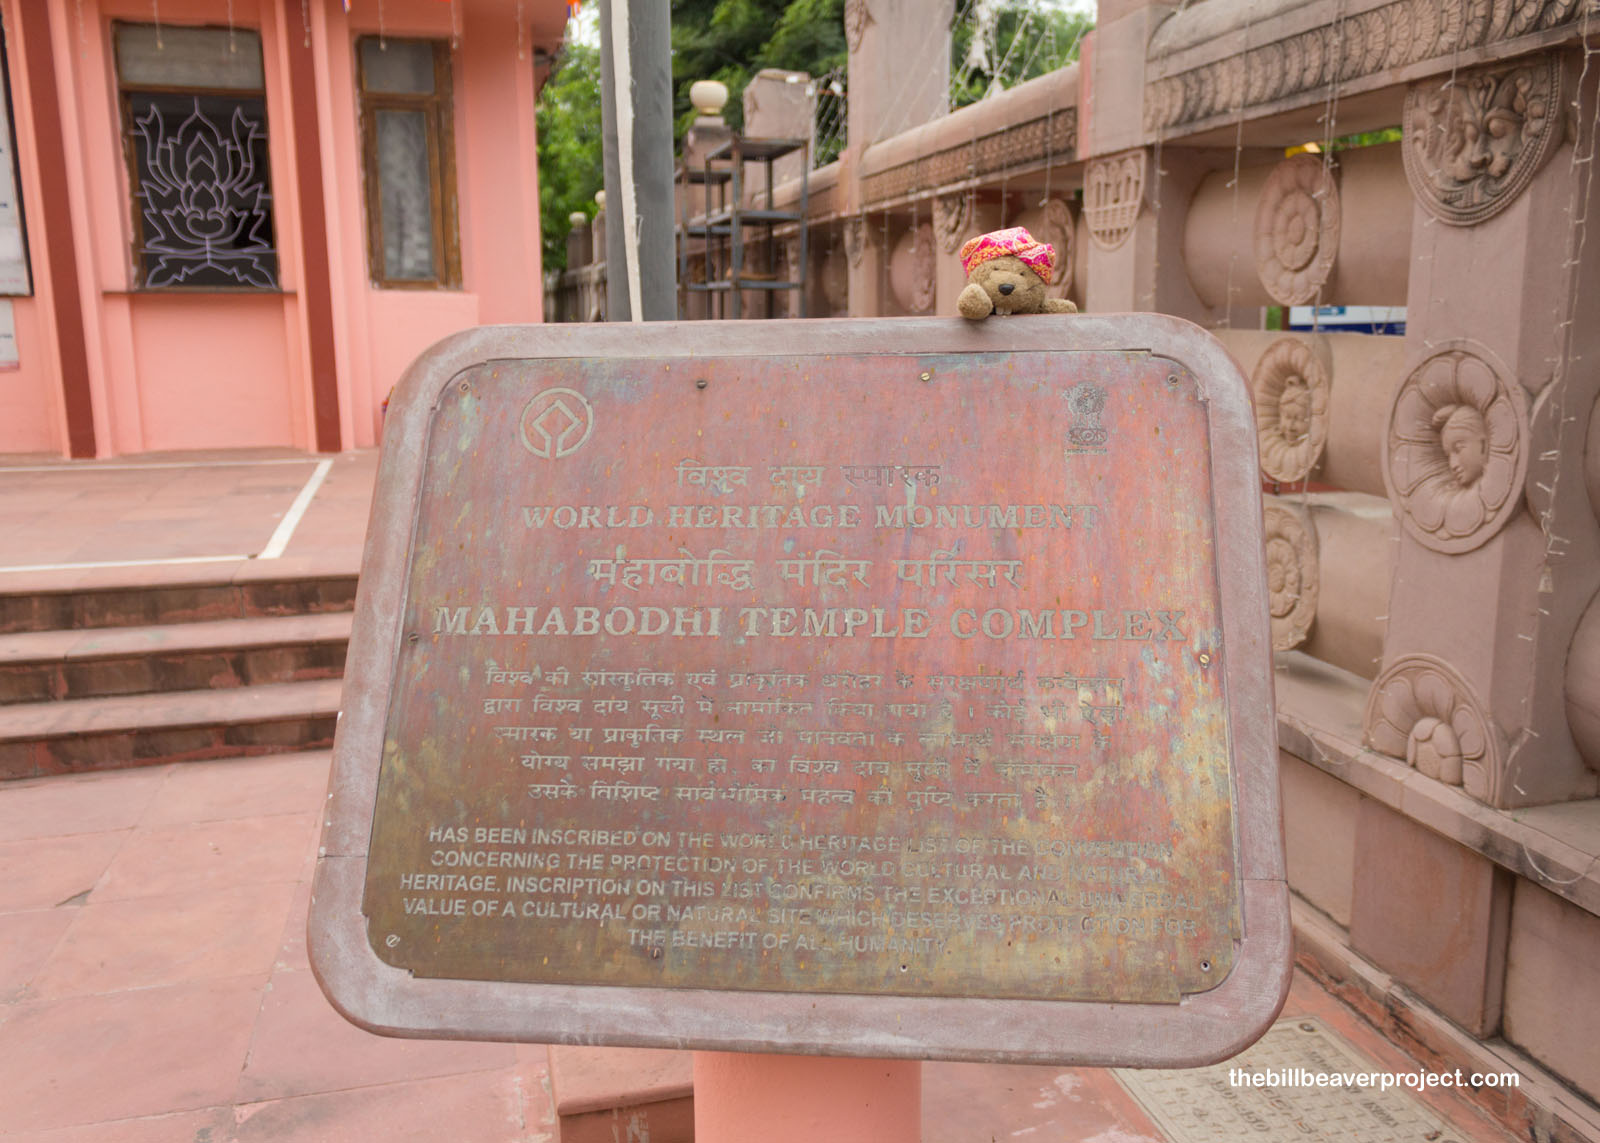 Mahabodhi Temple Complex